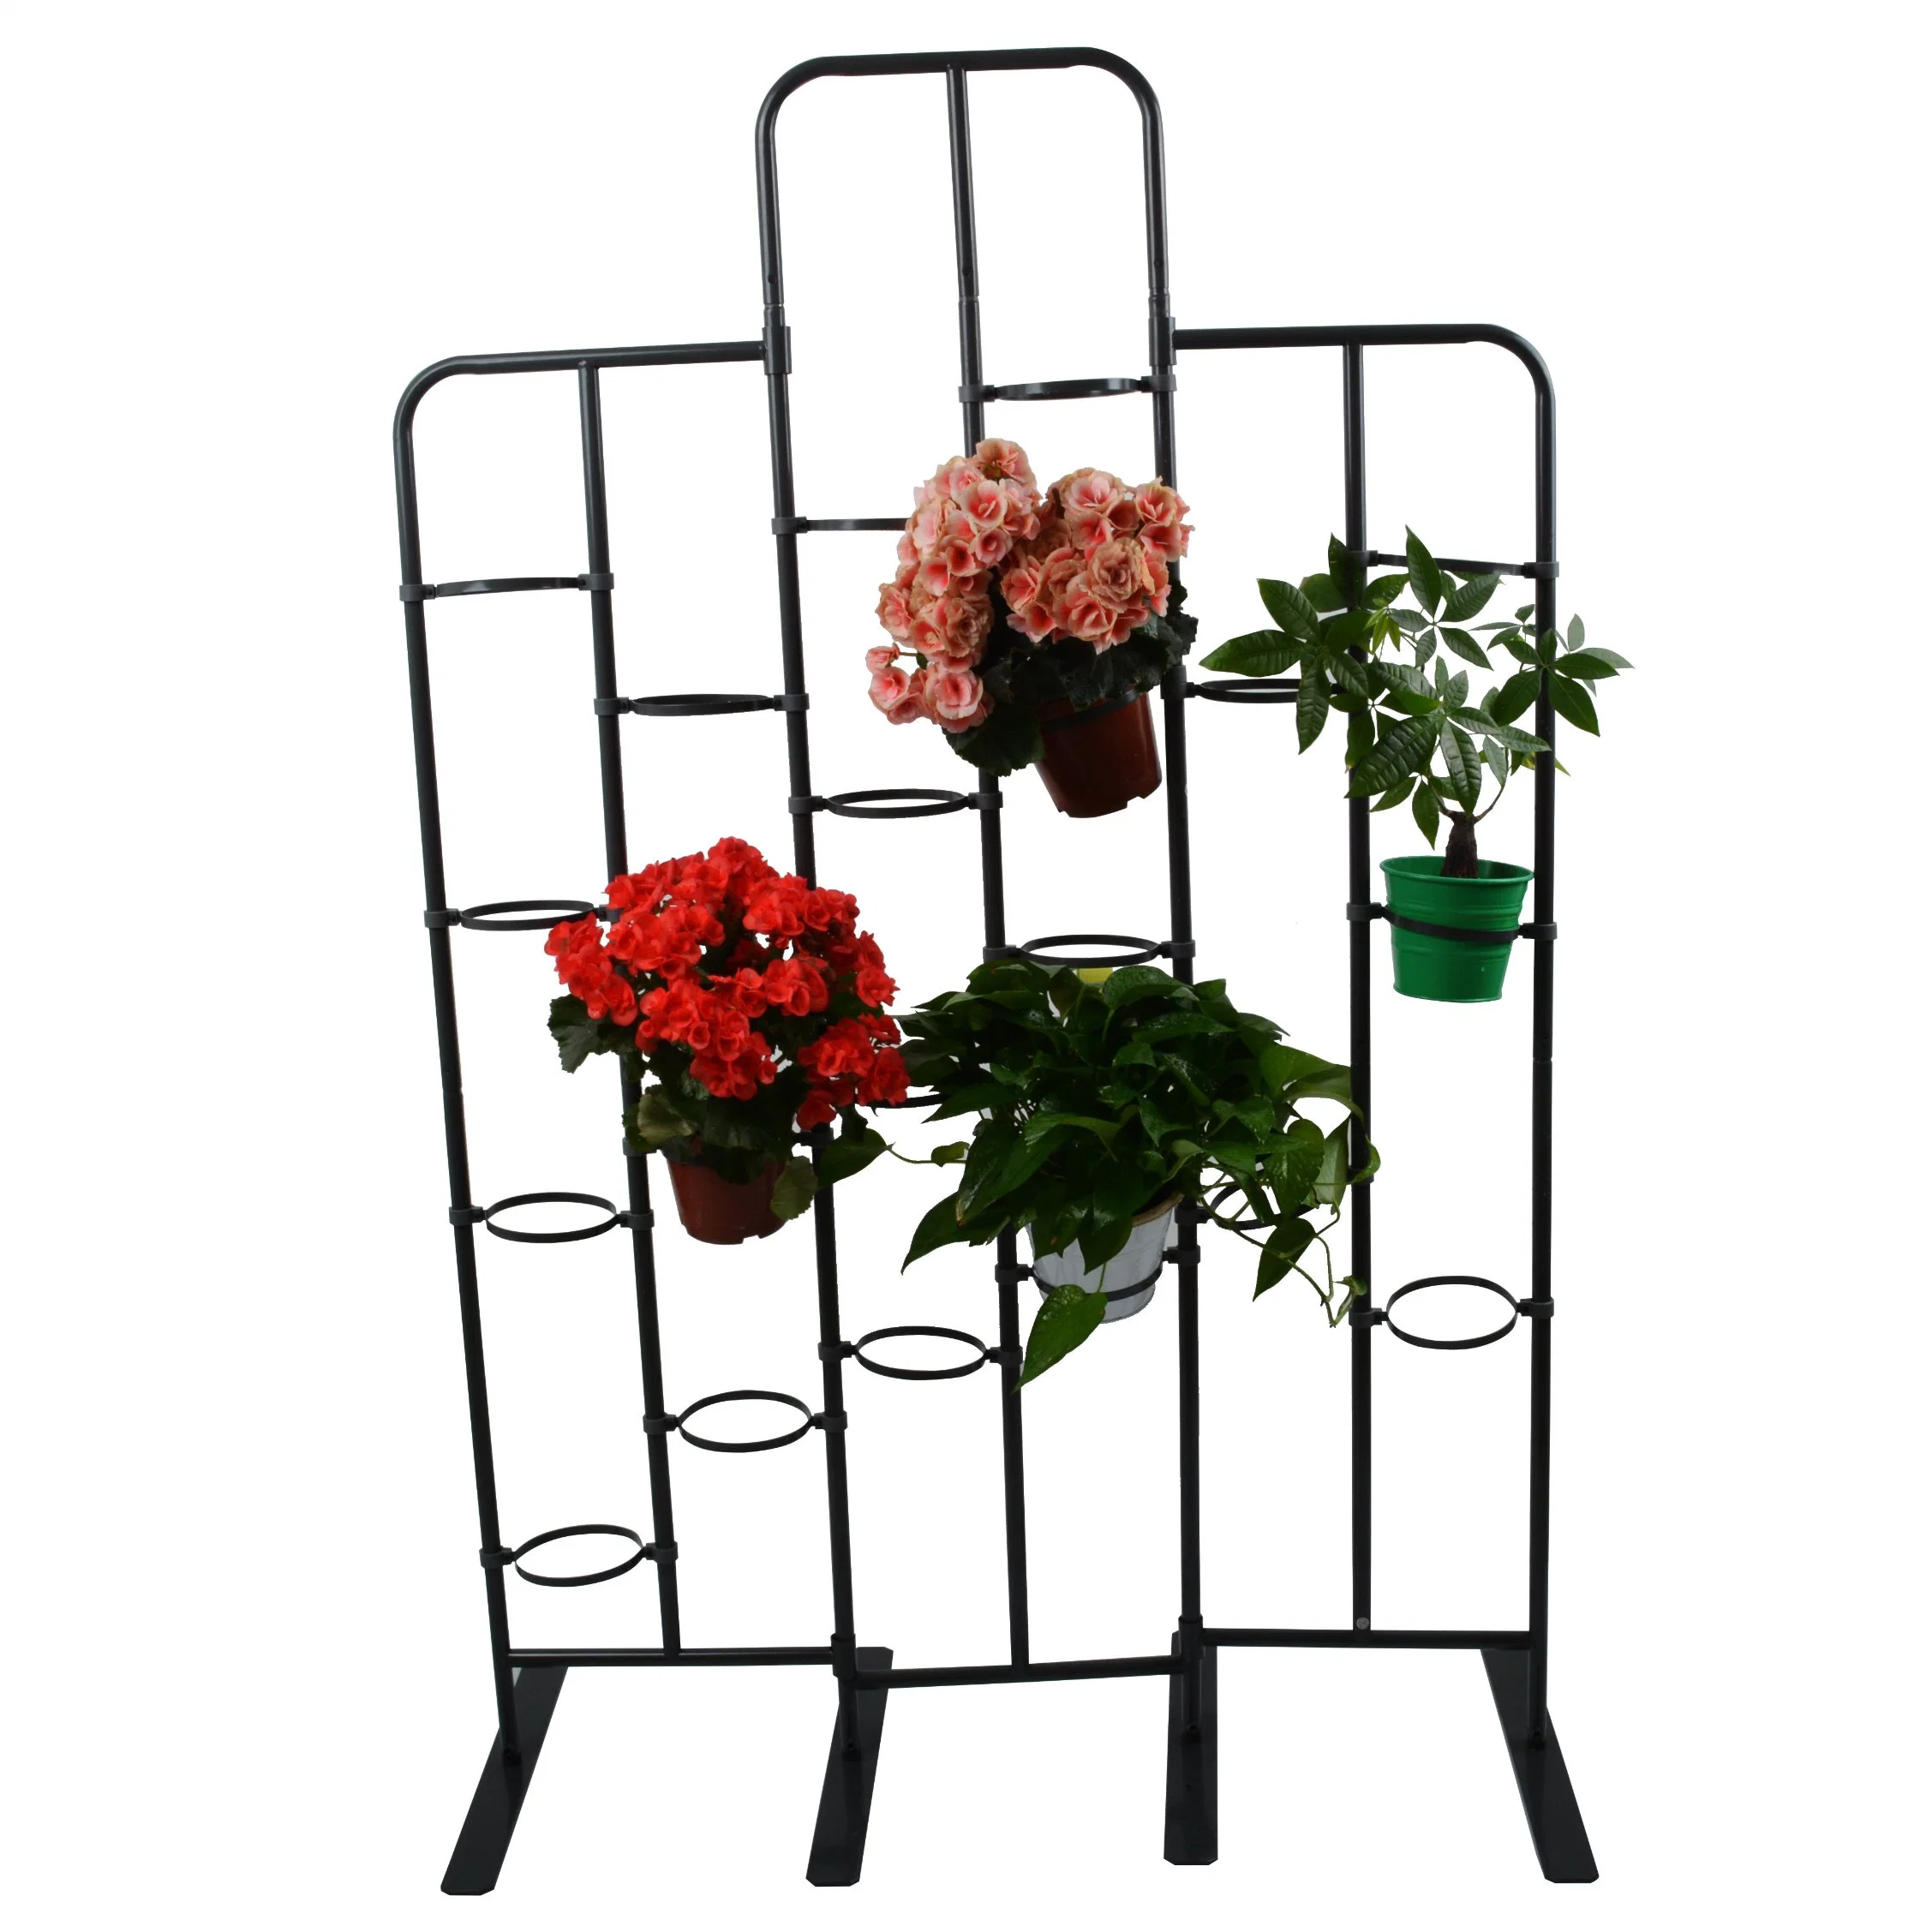 Suporte de flores de decoração para interior e exterior em ferro para vasos de plantas de jardim por atacado.